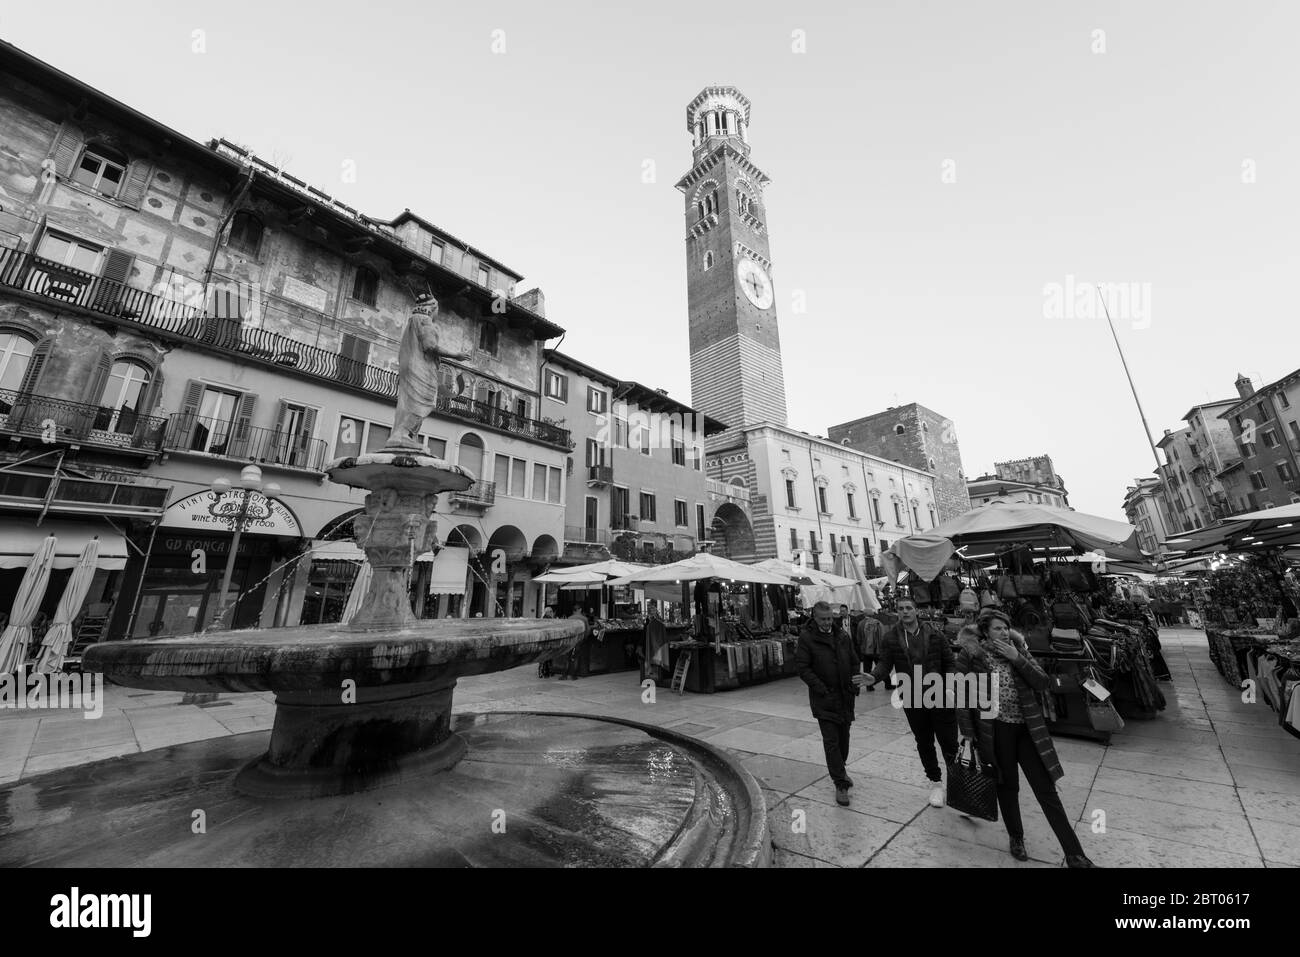 VÉRONE, ITALIE - 14, MARS 2018 : photo en noir et blanc de l'ancienne fontaine et du marché de Piazza delle Erbe, visite de Vérone, Italie Banque D'Images